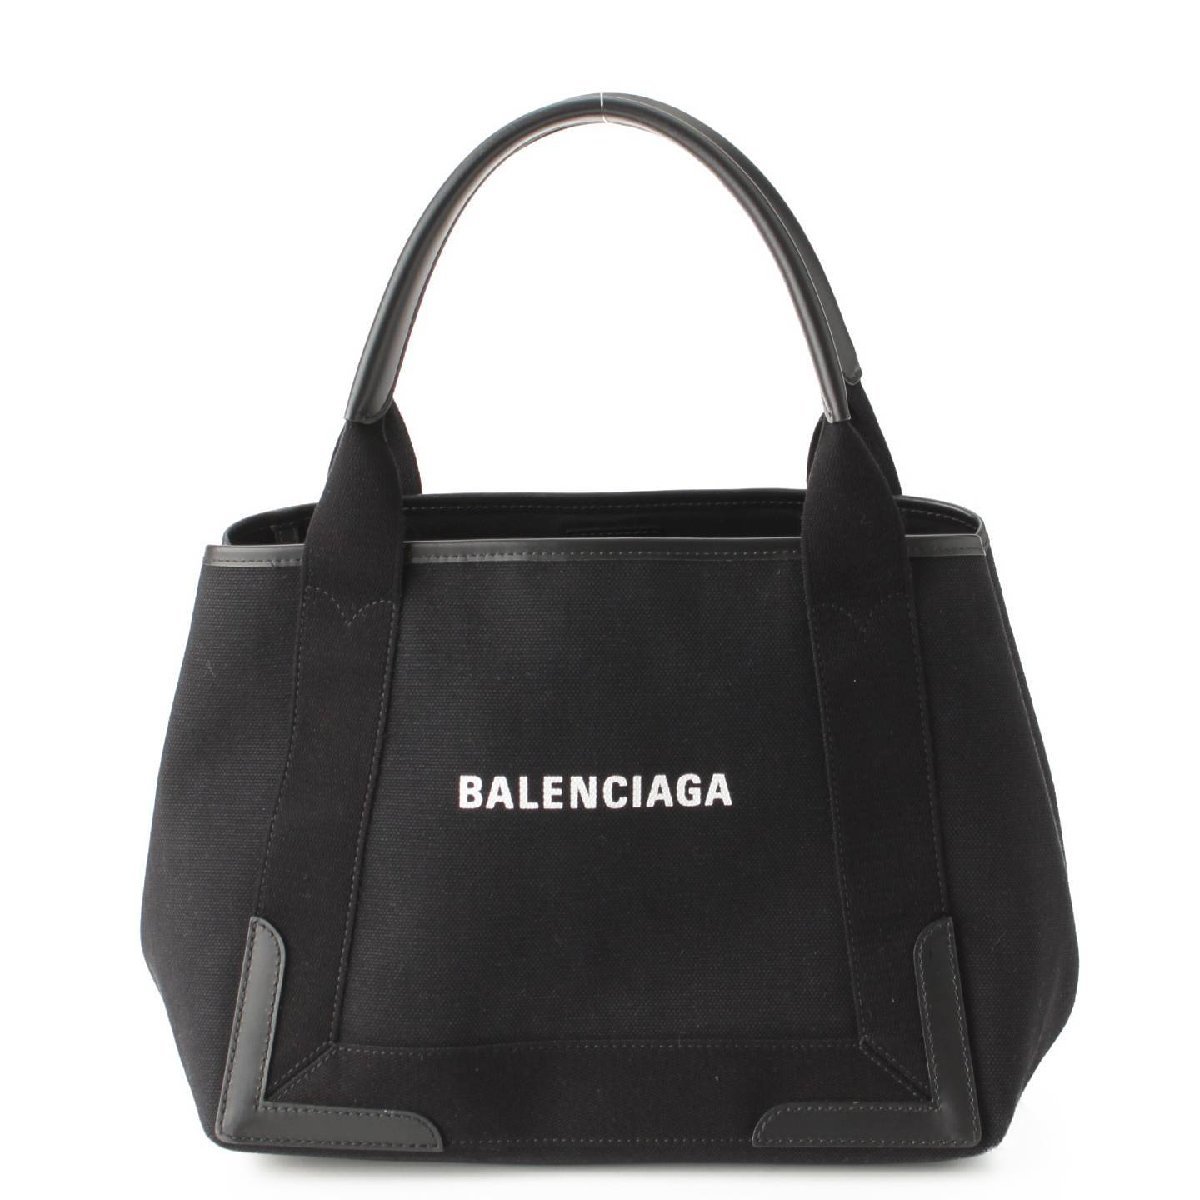 激安の商品 【バレンシアガ】Balenciaga ネイビーカバス スモール